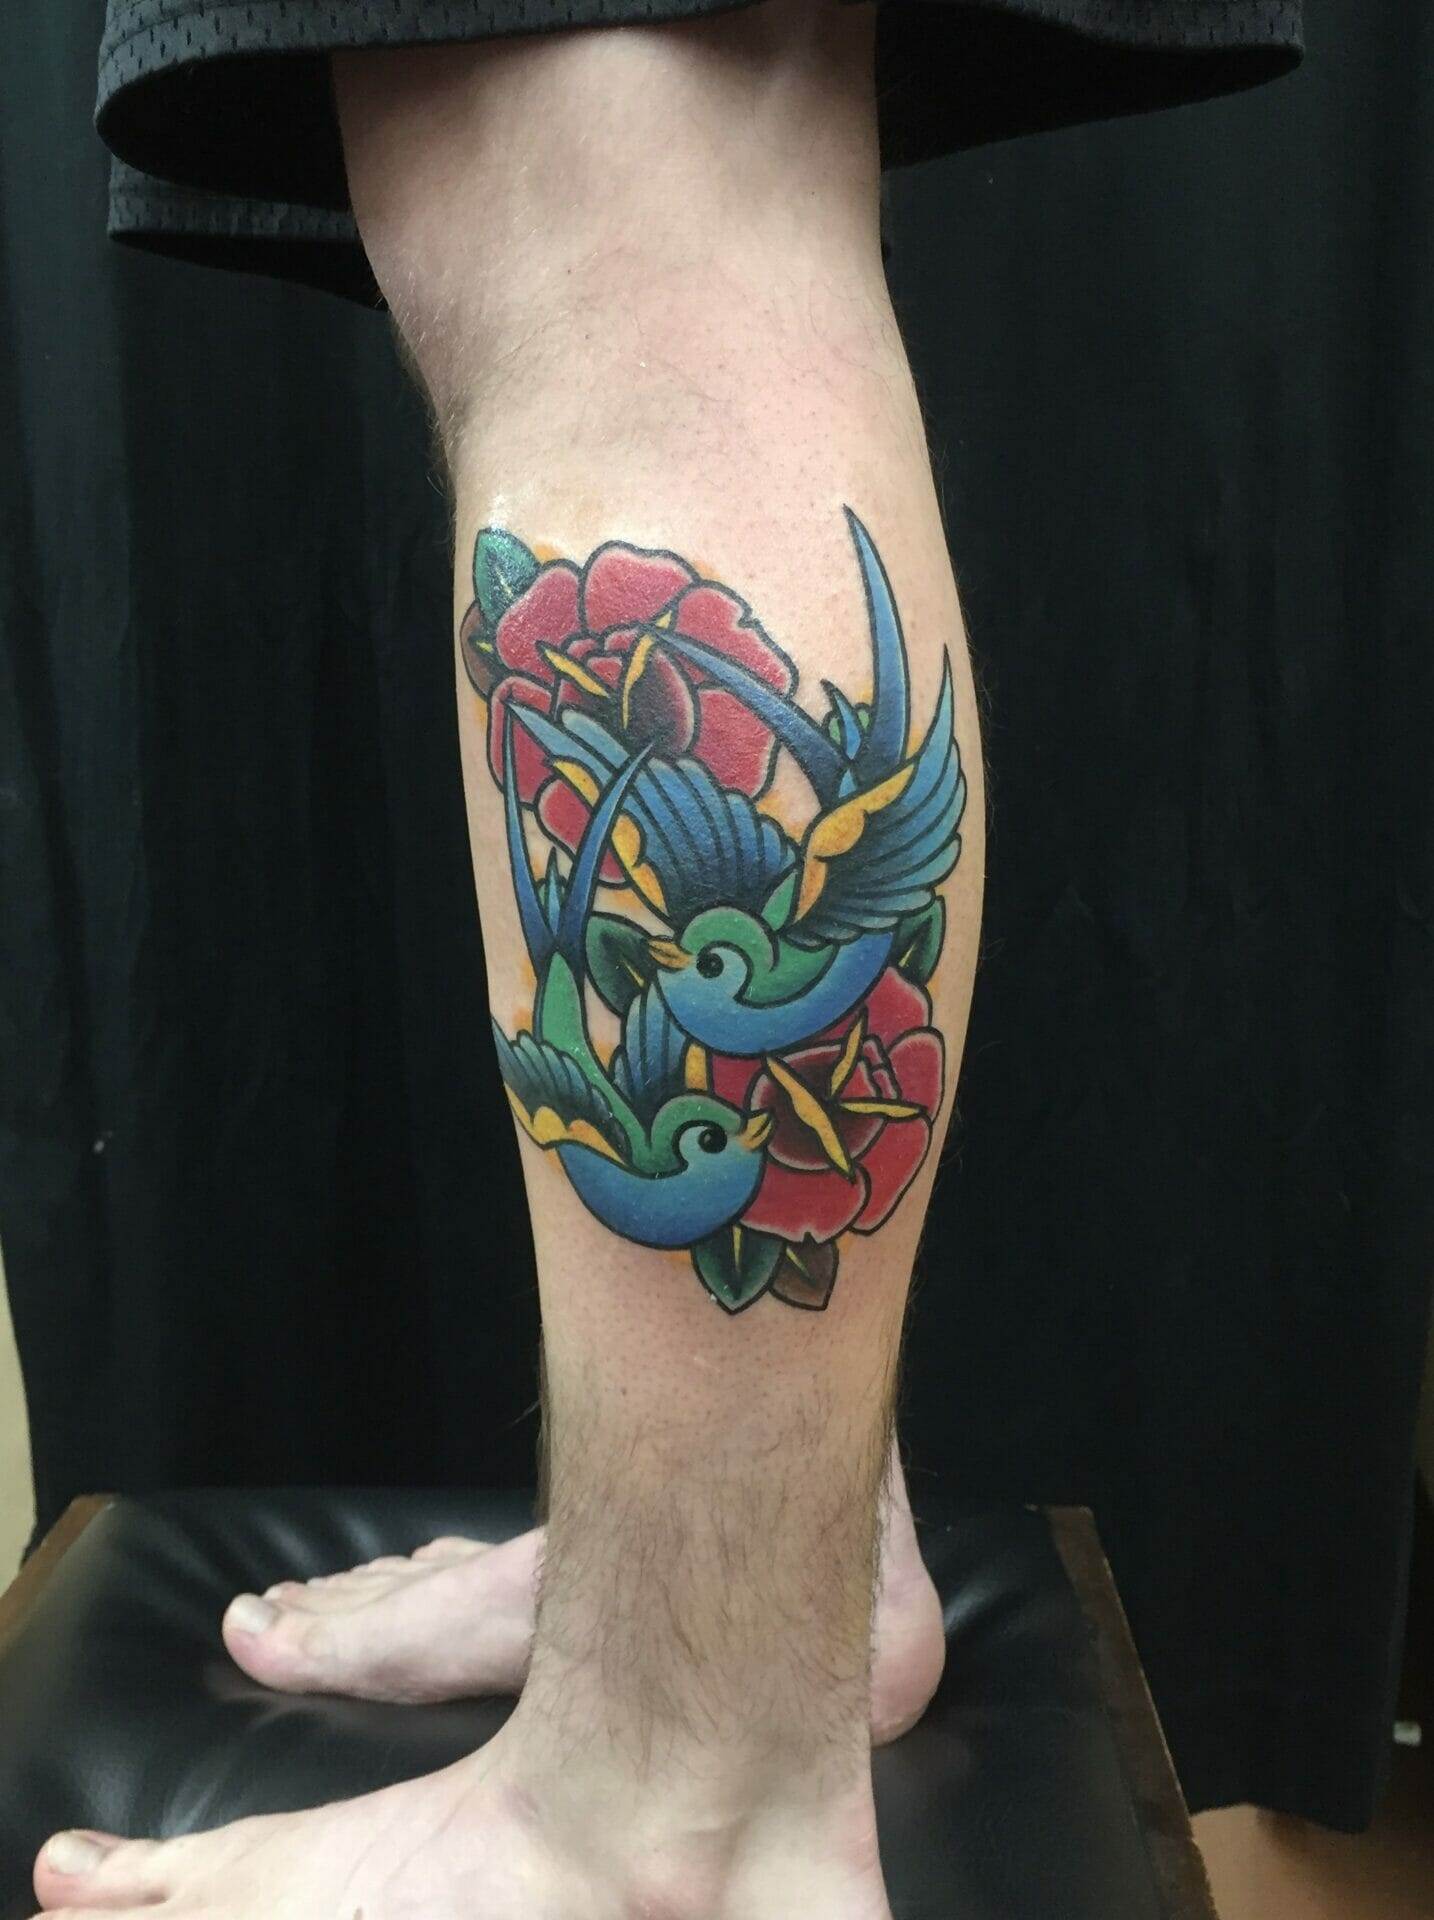 Swallows Tattoo on Arm - Best Tattoo Ideas Gallery